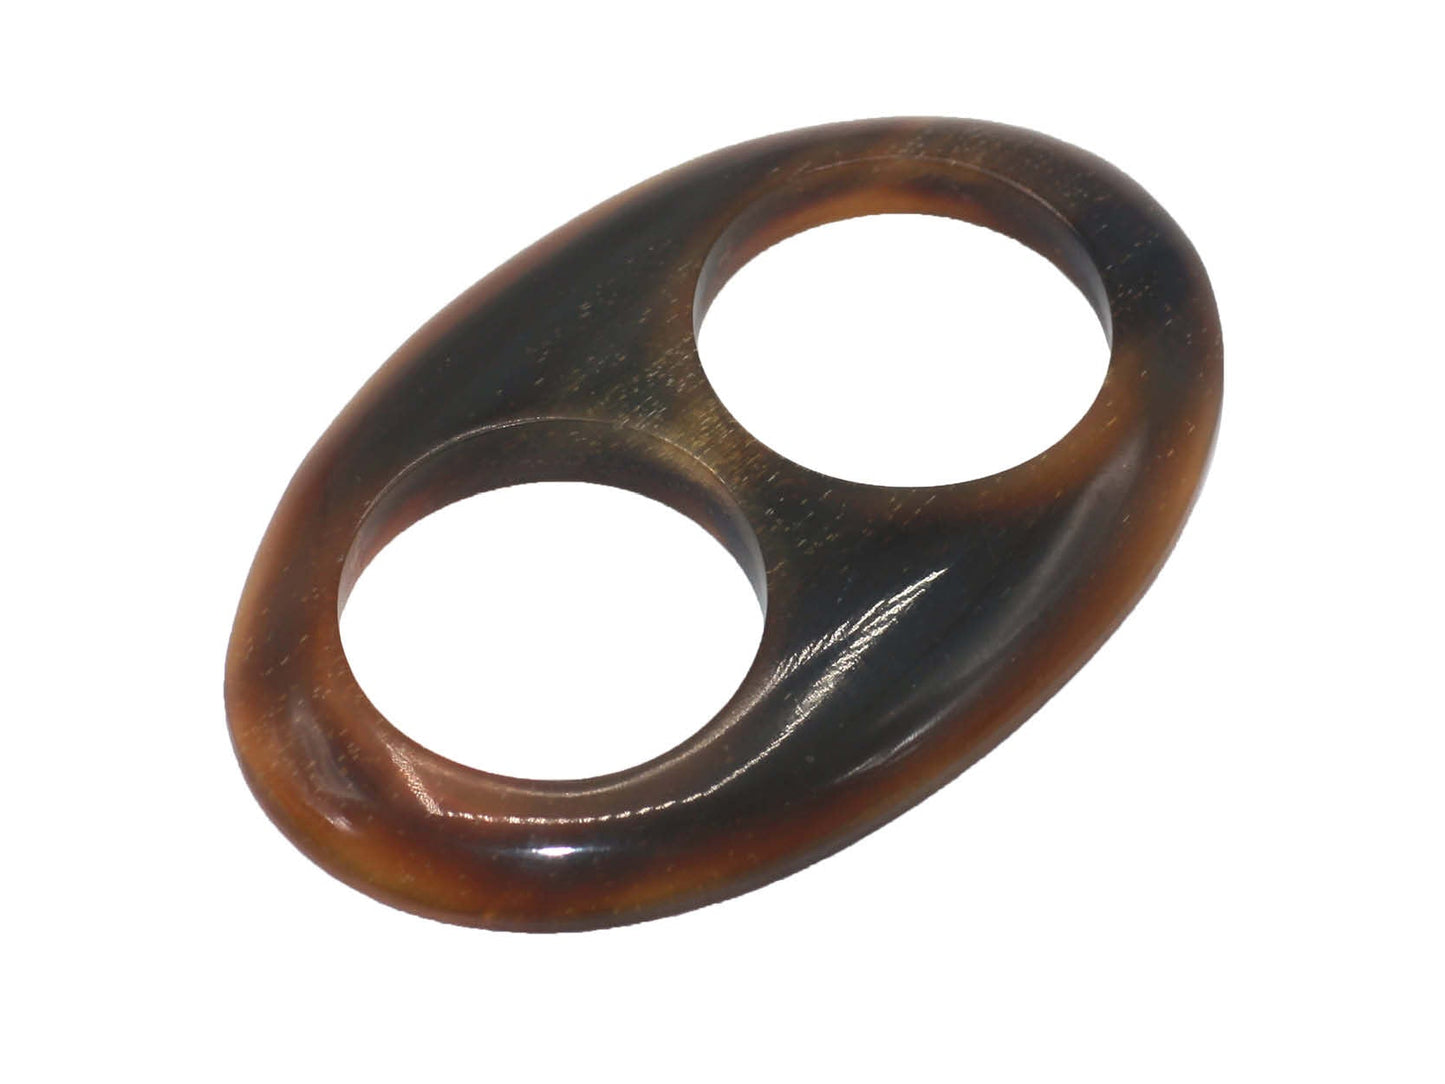 Tiger Ebony Wood Scarf Ring - Large